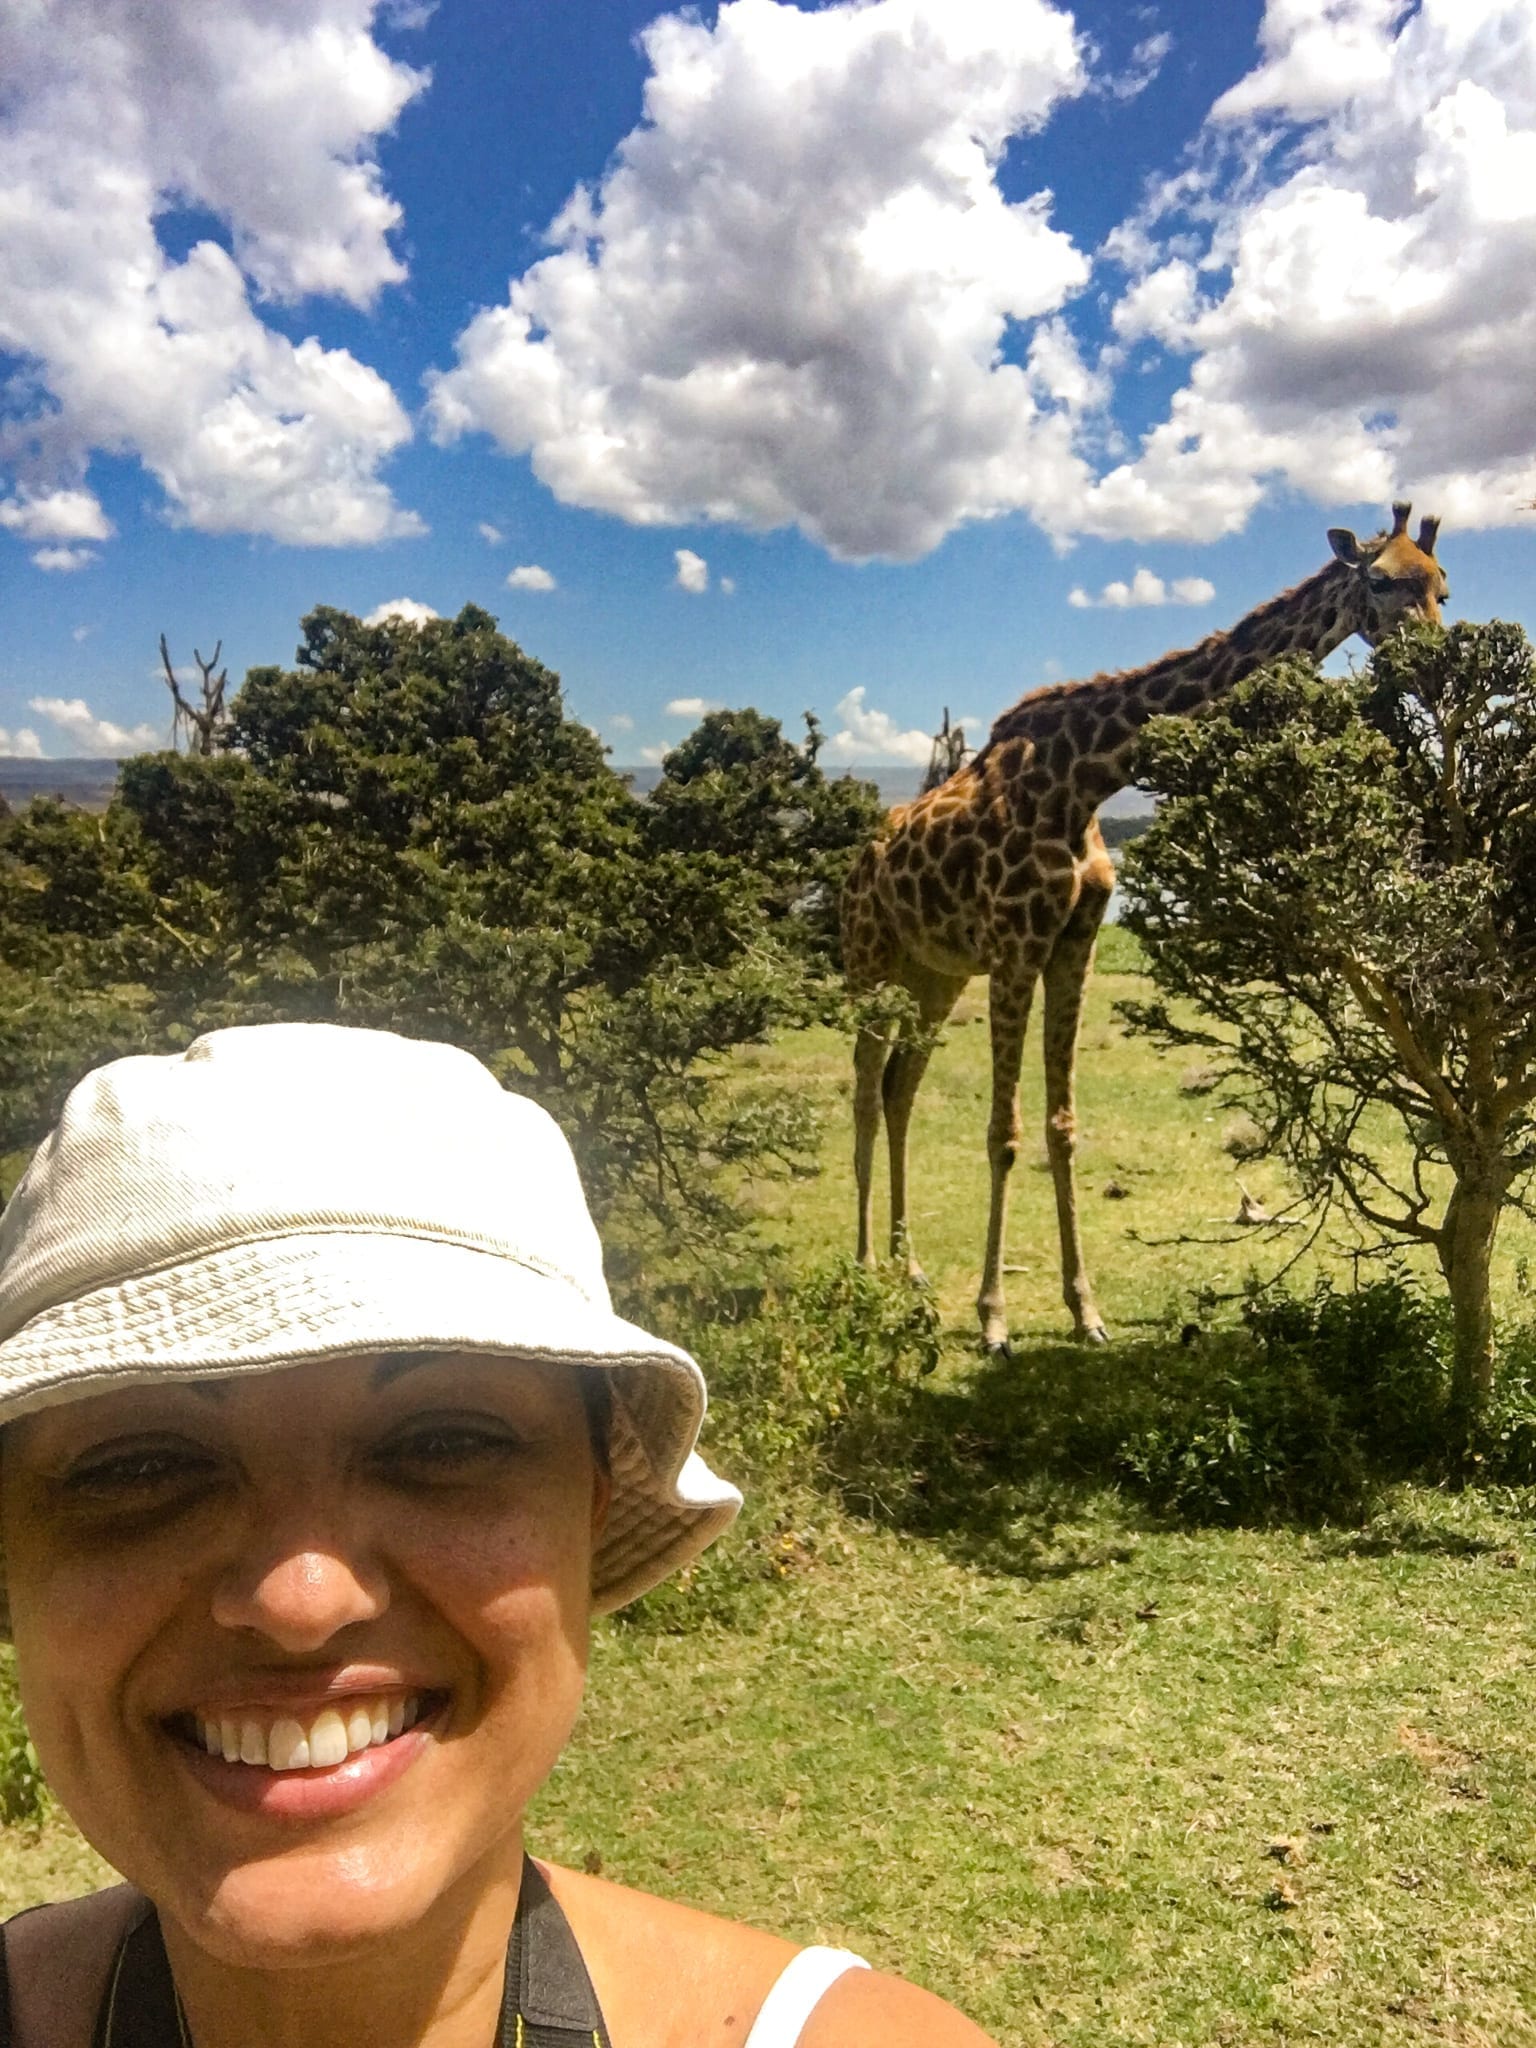 Dröm nu - res sen! Tina Sayed Nestius framför en giraff vill att du drömmer nu genom att boka en gratis resekonsultation med henne